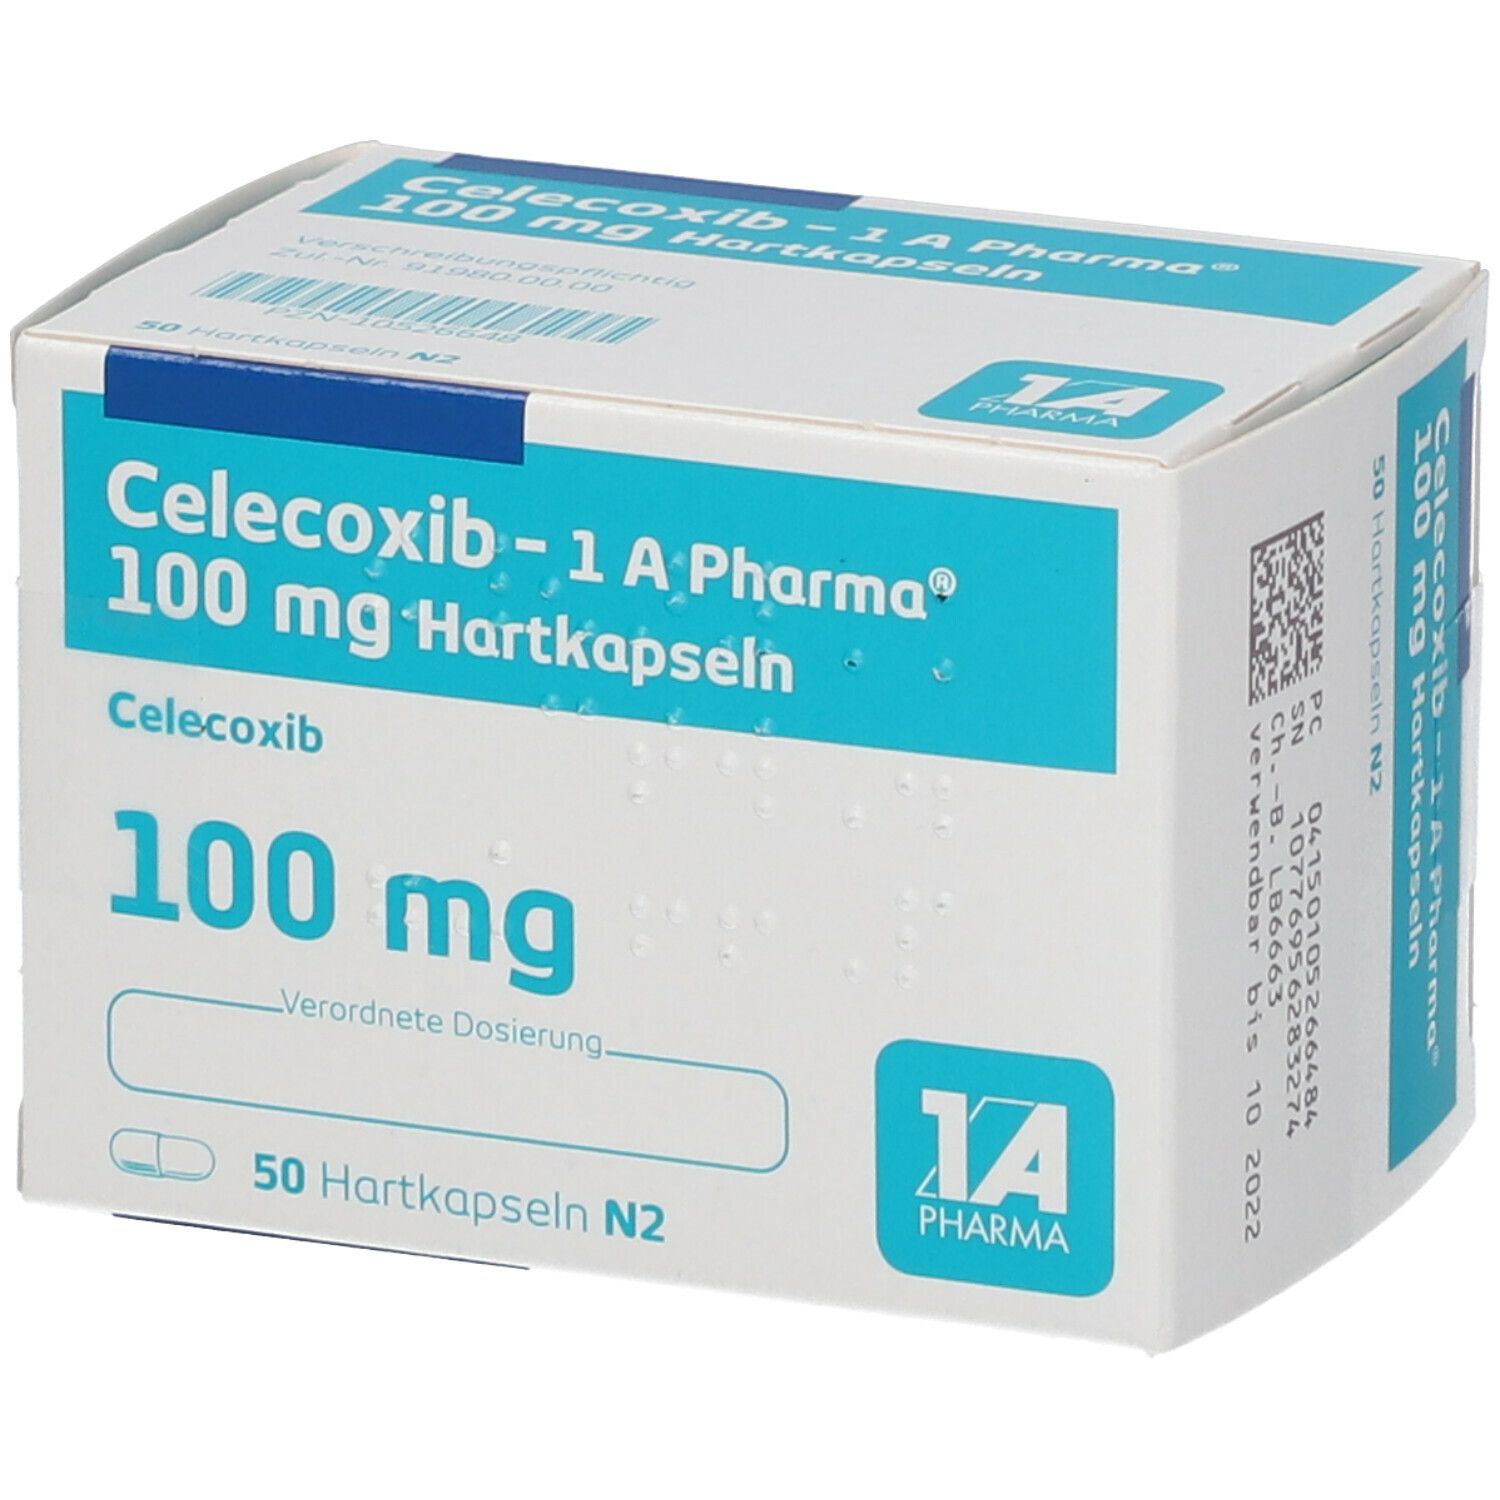 Celecoxib 1A Pharma® 100Mg